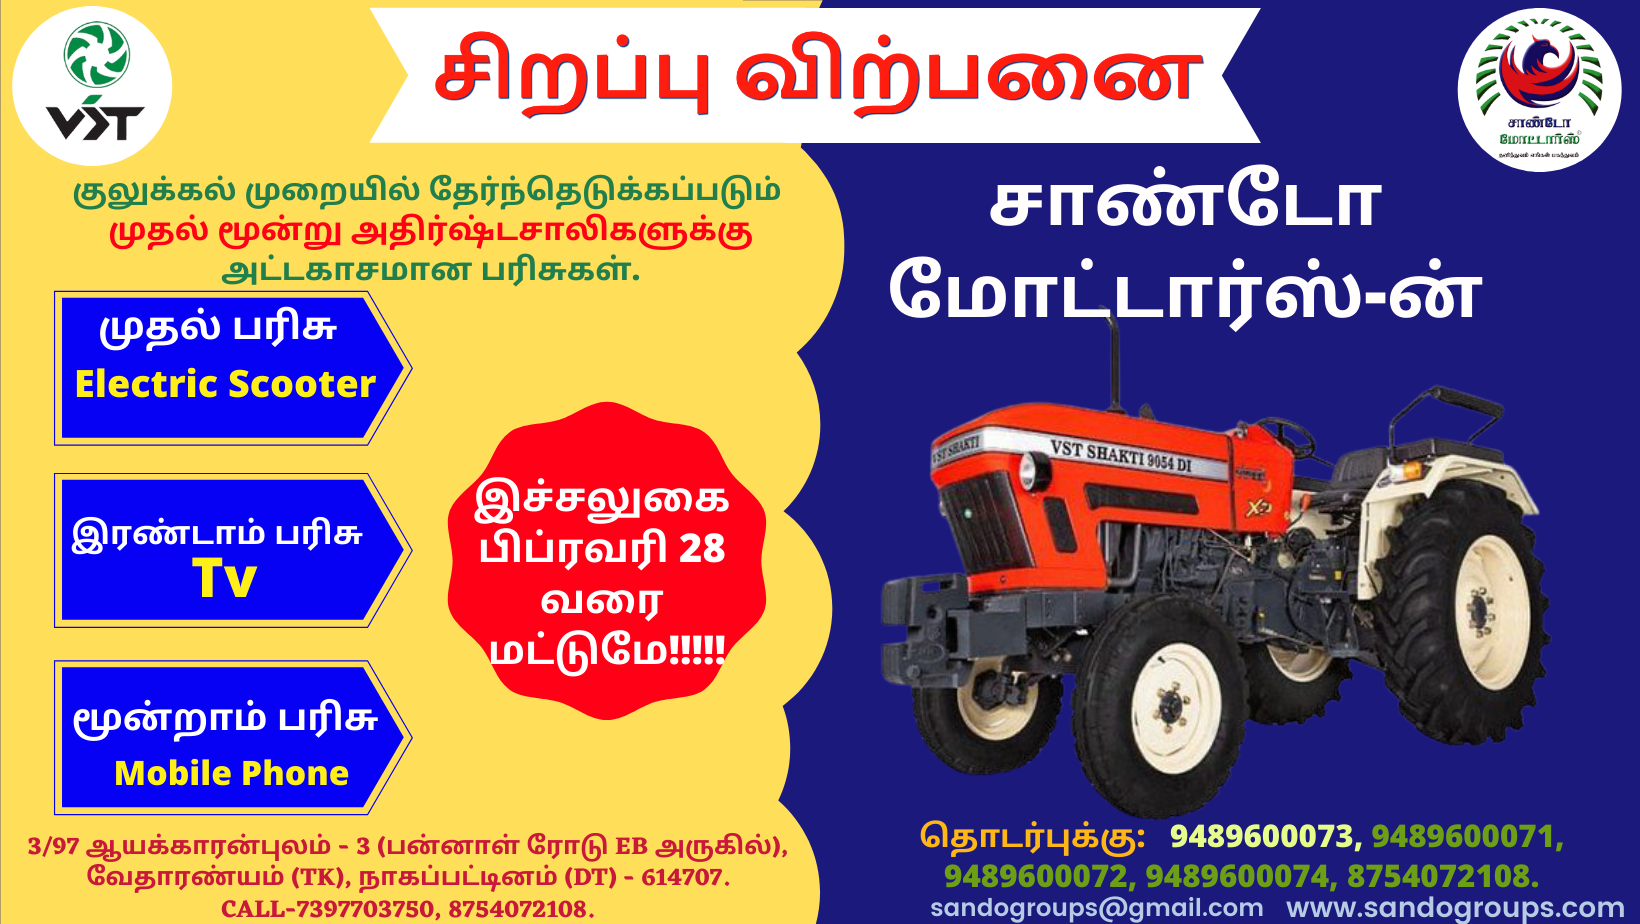 VST Shaki tractors